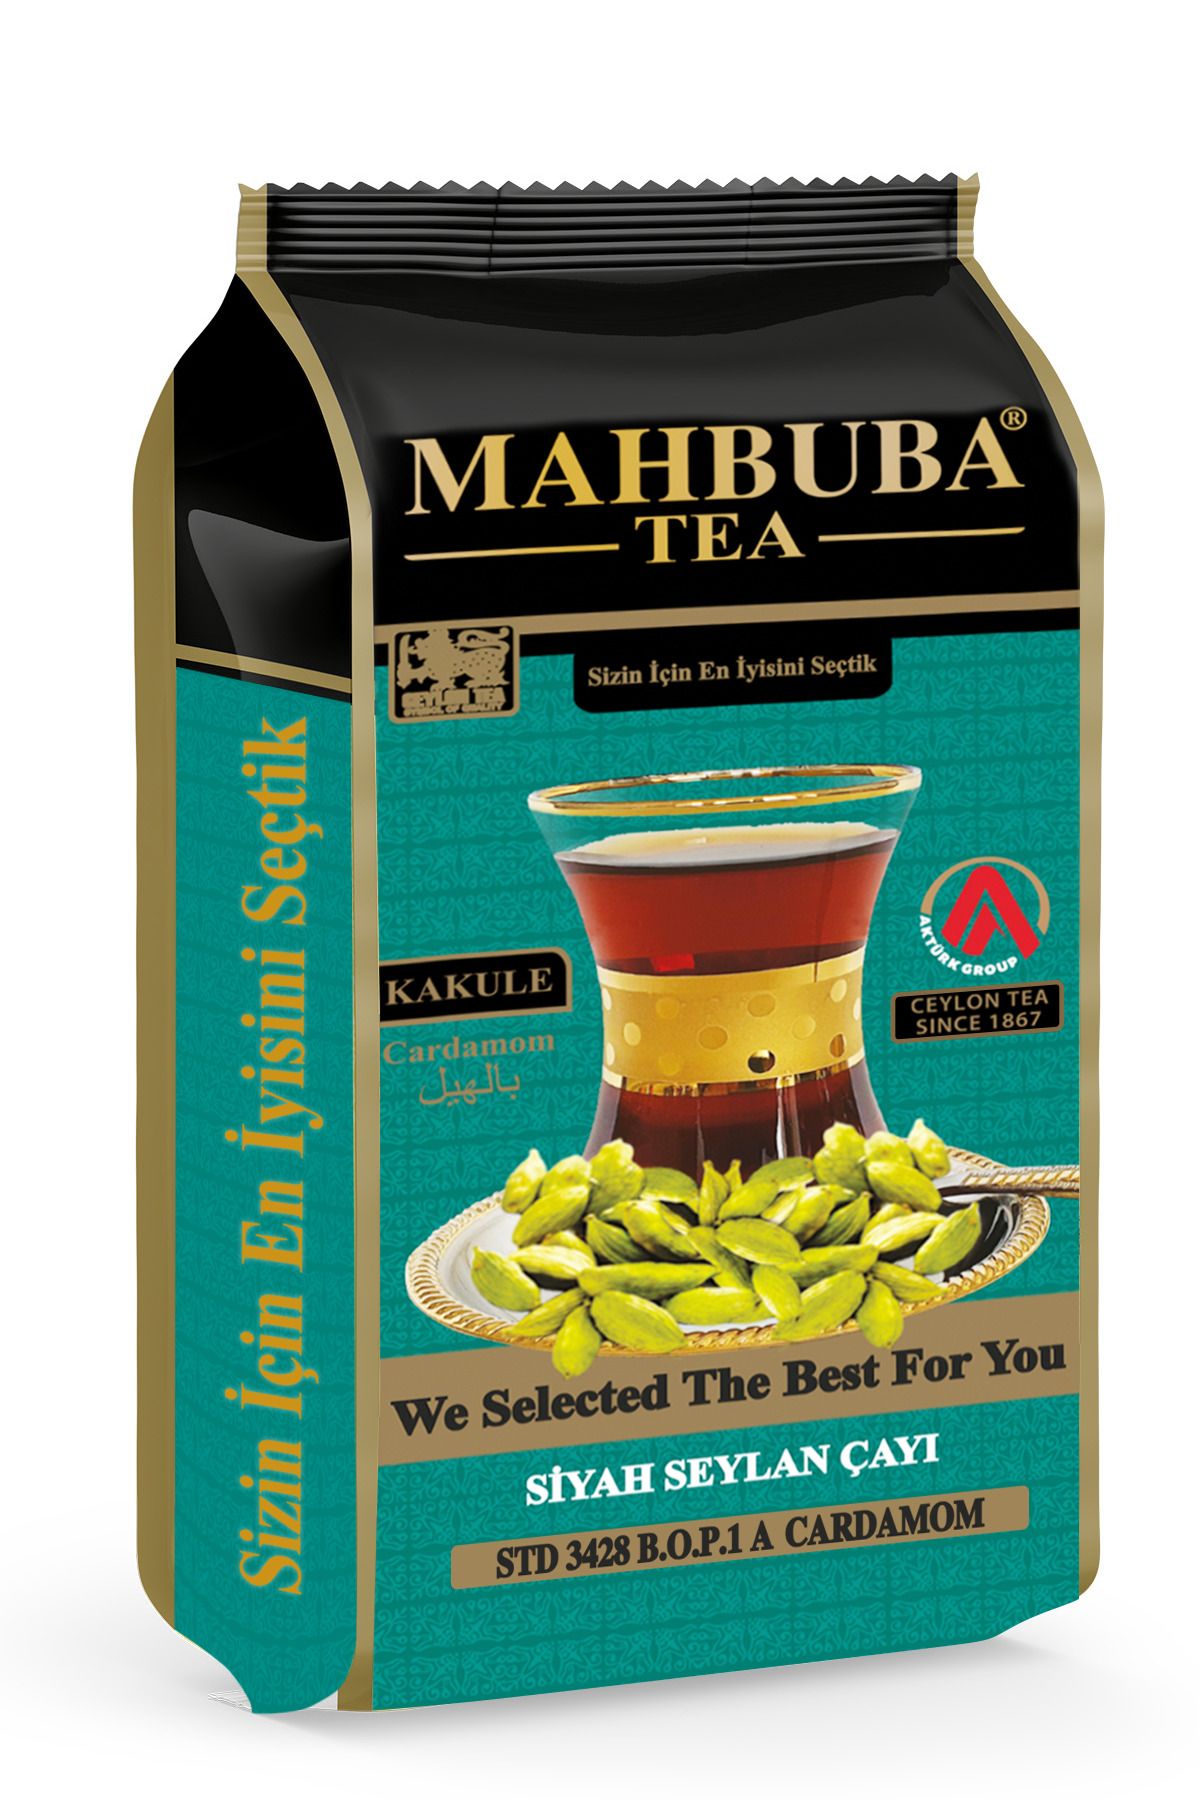 Mahbuba Tea Std 3428 Kakule Cardamom Aromalı Ithal Seylan Sri Lanka Ceylon Kaçak Siyah Yaprak Çayı 200gr